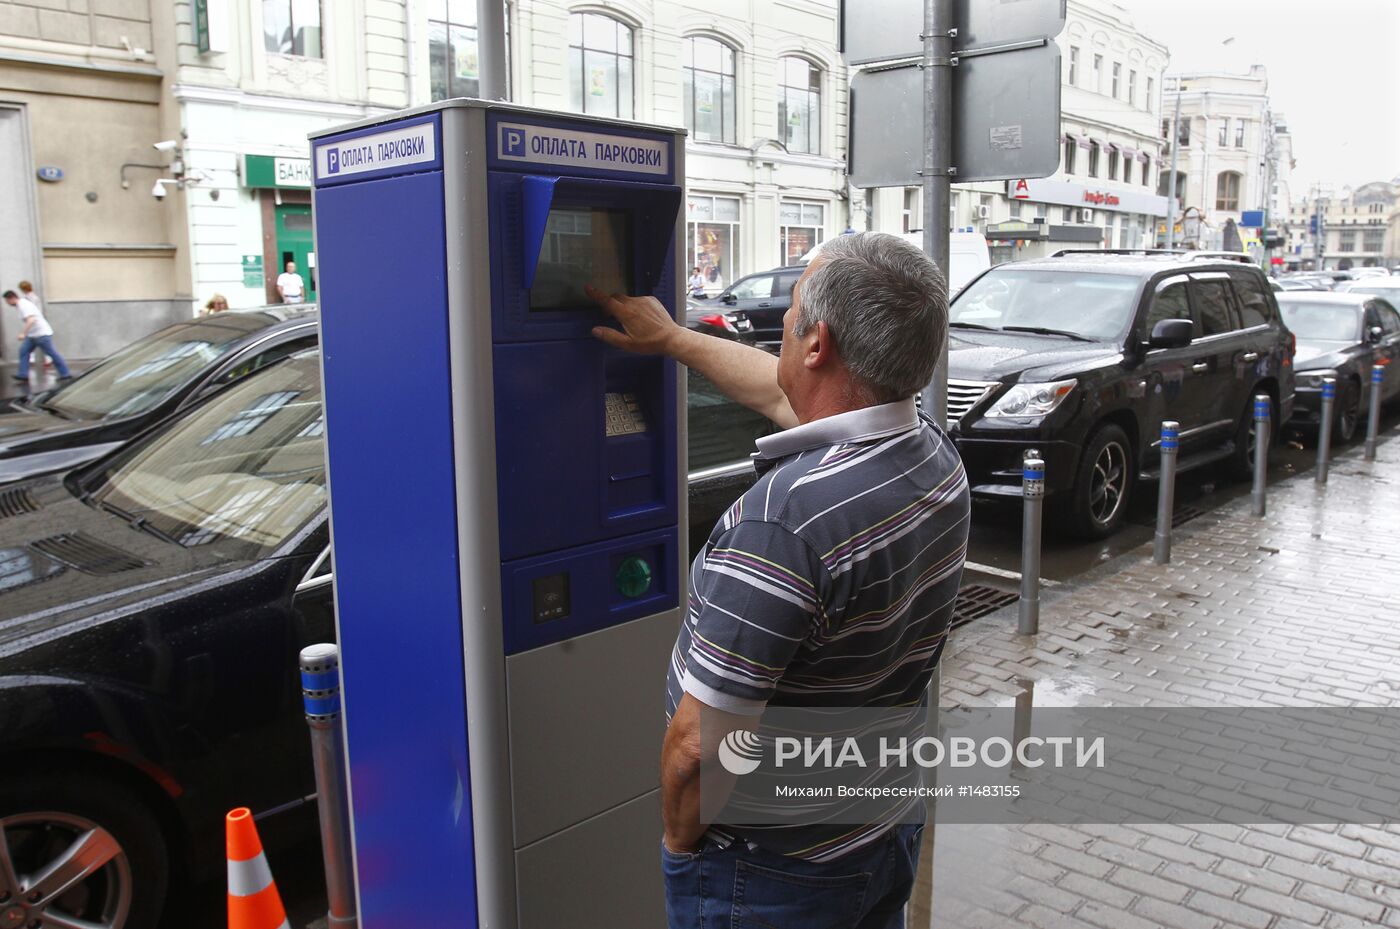 Платные парковки в центре Москвы